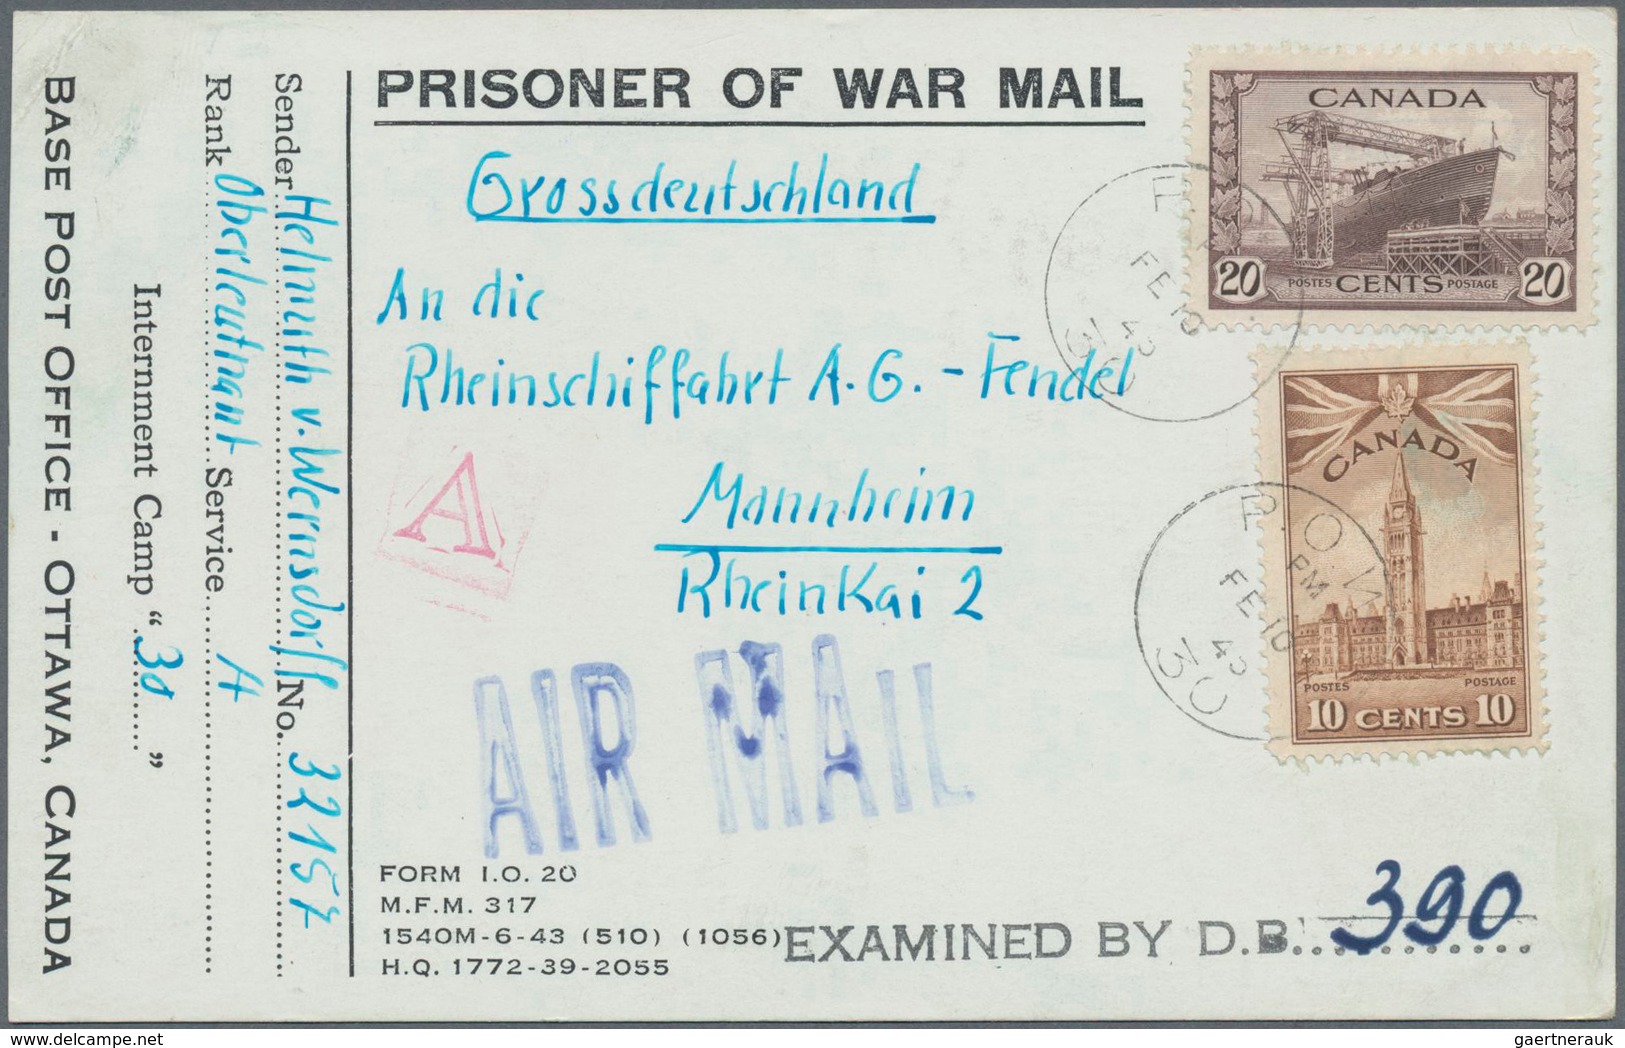 Kriegsgefangenen-Lagerpost: 1901/1948 (ca.), mehr als 100 Belege, dabei Postkarte aus St. Helena (Bu